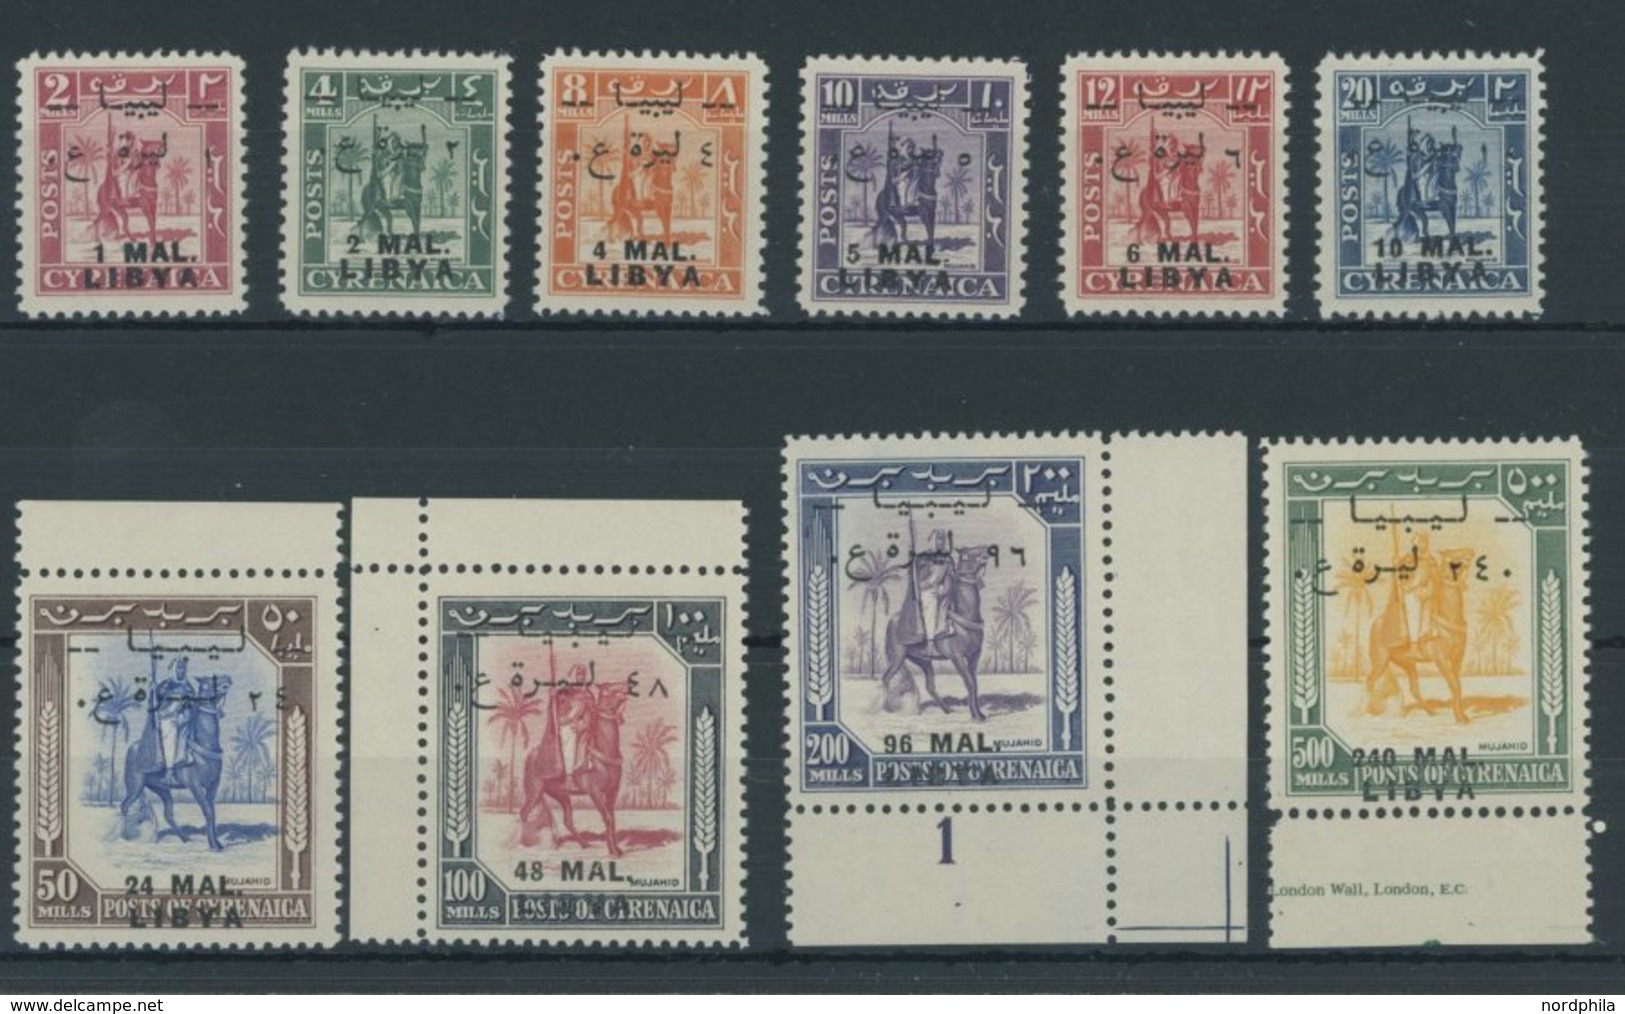 LIBYEN 24-31 **, 1951, Senussi-Kampfreiter, MAL-Währung, Postfrischer Prachtsatz, Signiert Zumstein, Mi. 130.- - Libya